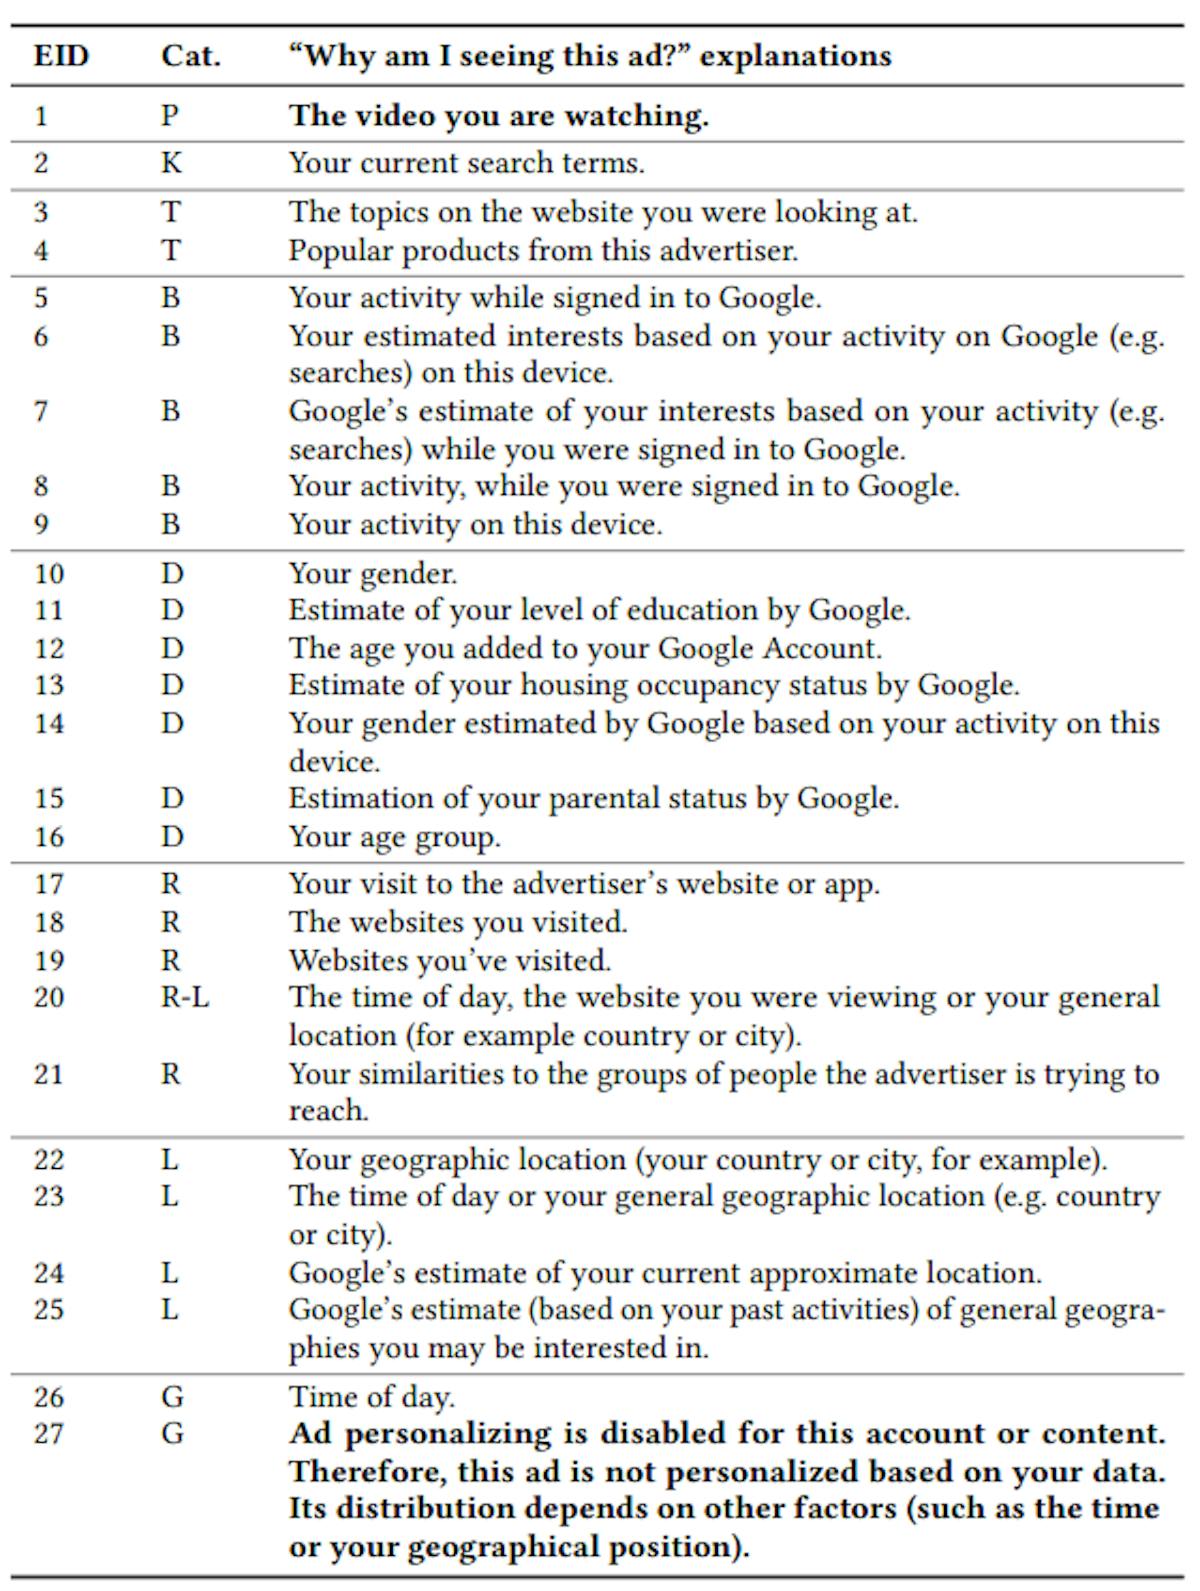 Tabelle 4: Liste der Erklärungen, warum ein Benutzer eine Anzeige erhält. Wir gruppieren sie in acht Targeting-Kategorien: A – Platzierungsbasierte Anzeigen; R – Re-Targeting-Anzeigen; T – Themenbasierte Anzeigen; K – Keyword-basiert; D – Demografie-basiert; B – Verhaltens- oder interessensbasiert; L – Standort-basiert; G – Allgemeines Targeting. Die Gruppierung erfolgt auf Grundlage unserer Intuition und nicht auf Grundlage von Anzeigenexperimenten mit eindeutigen Beweisen.